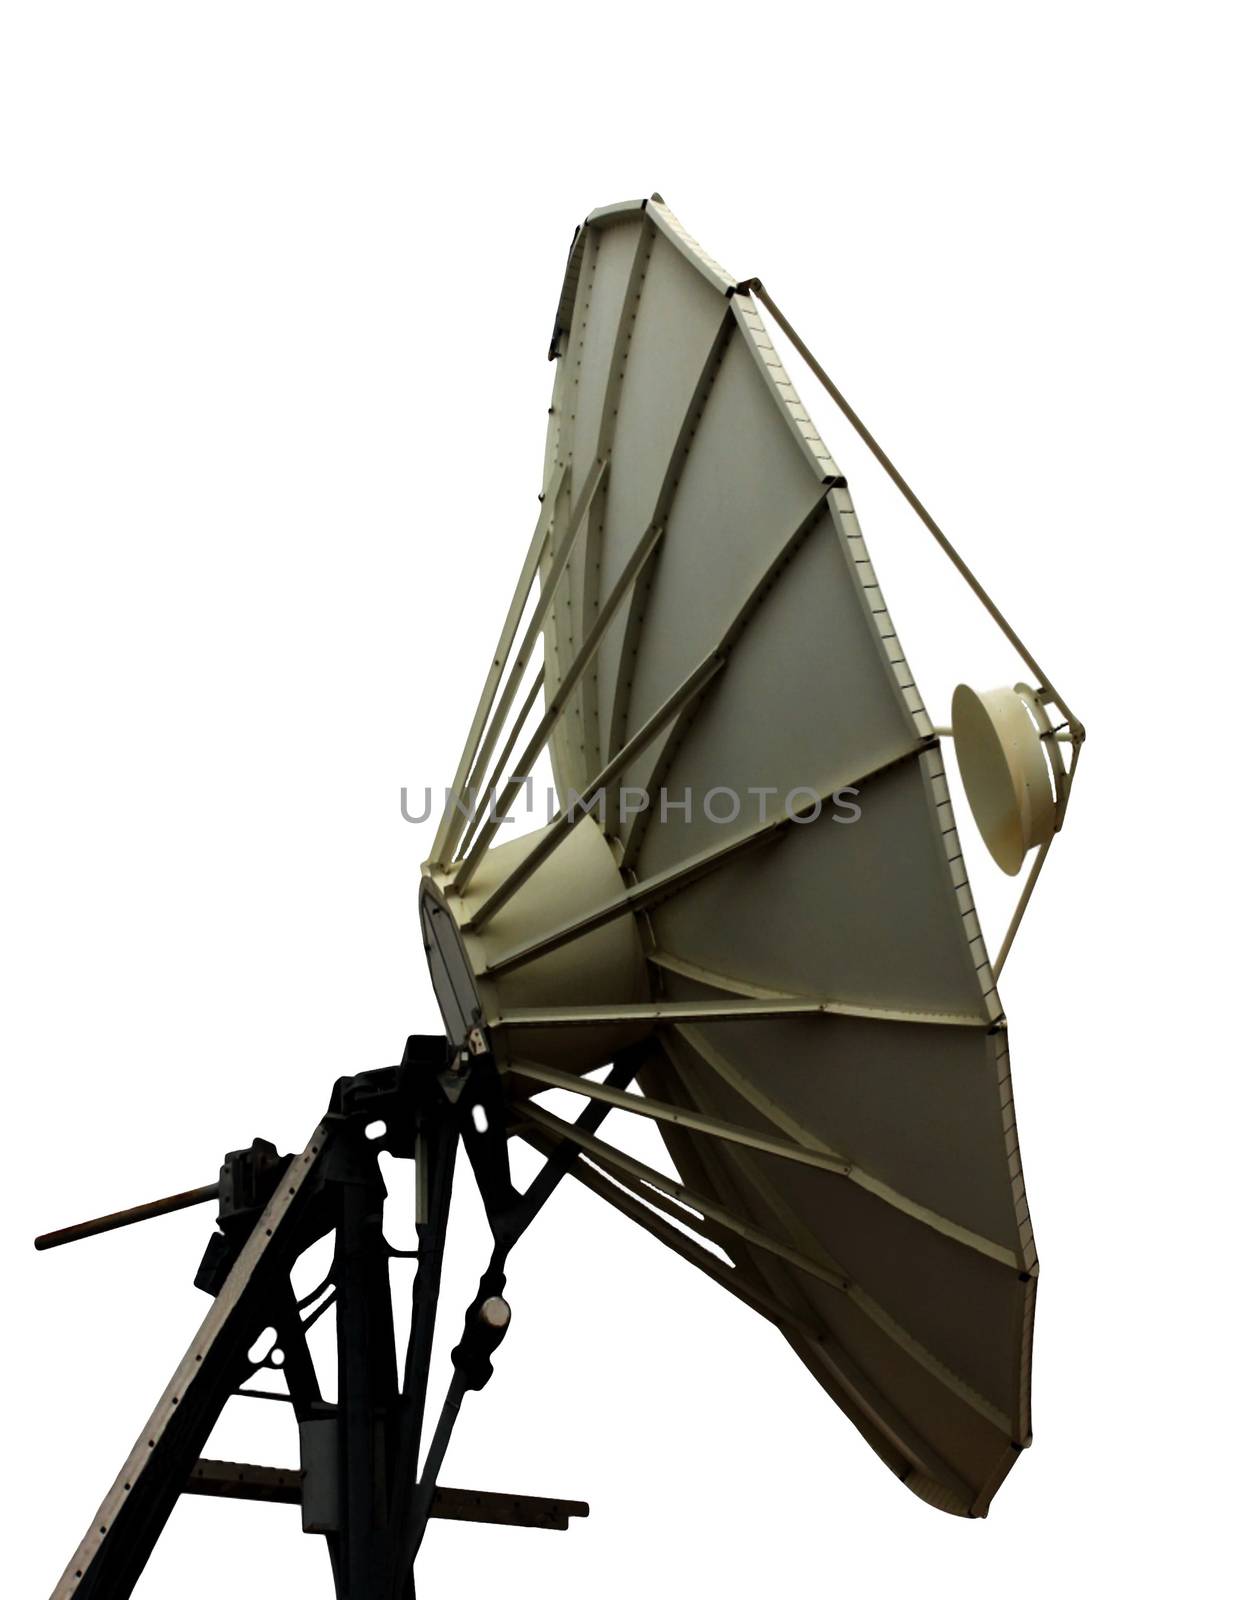 Satellite dish isolated on white background